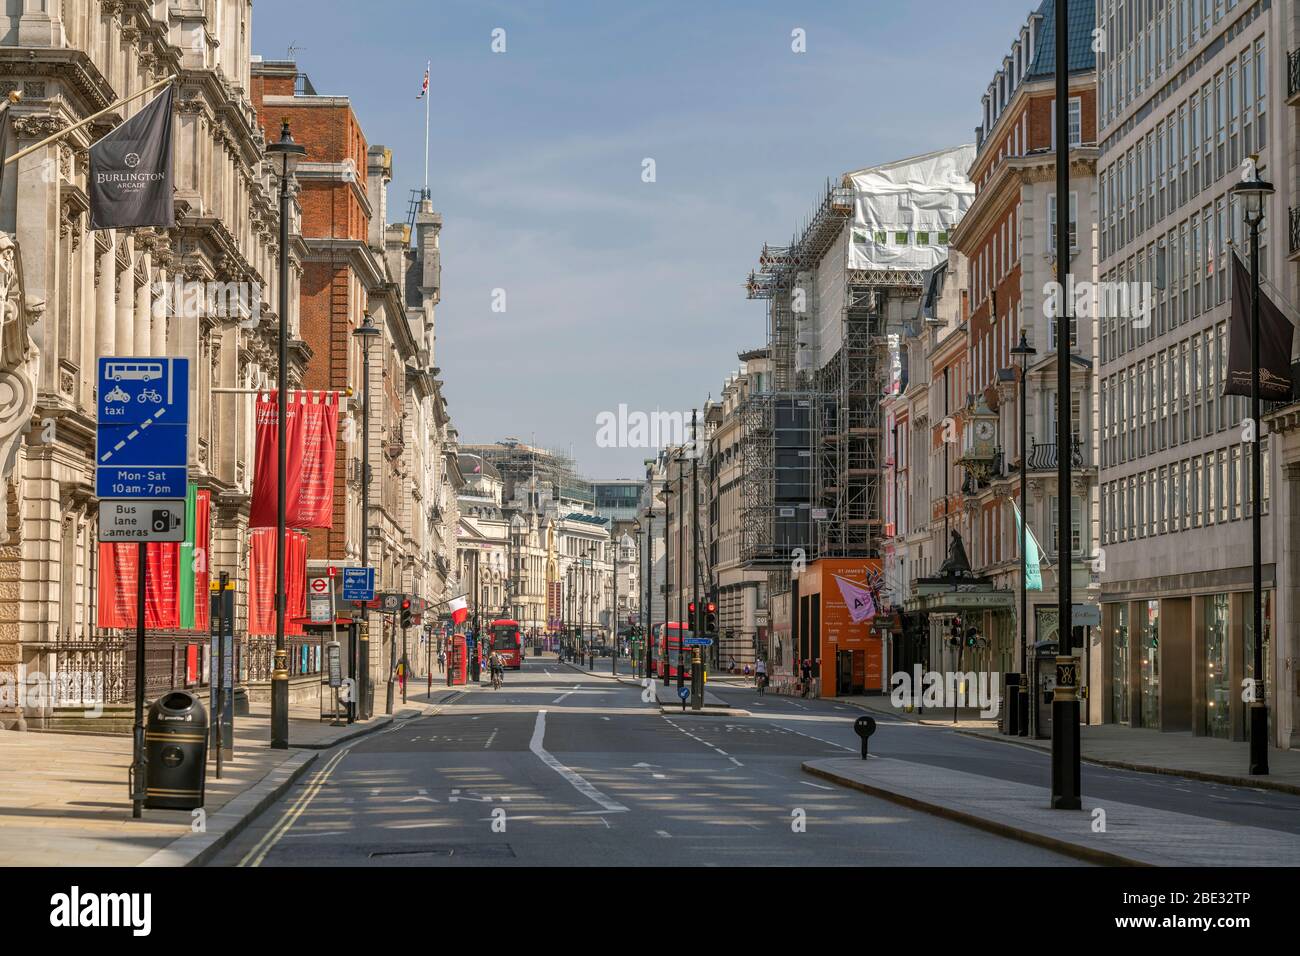 Berühmt und meist geschäftig Piccadilly, eine Straße im Zentrum Londons, die während der erzwungenen Sperrung aufgrund der Coronavirus-Grippeepidemie von Covid-19 leer und ruhig ist Stockfoto